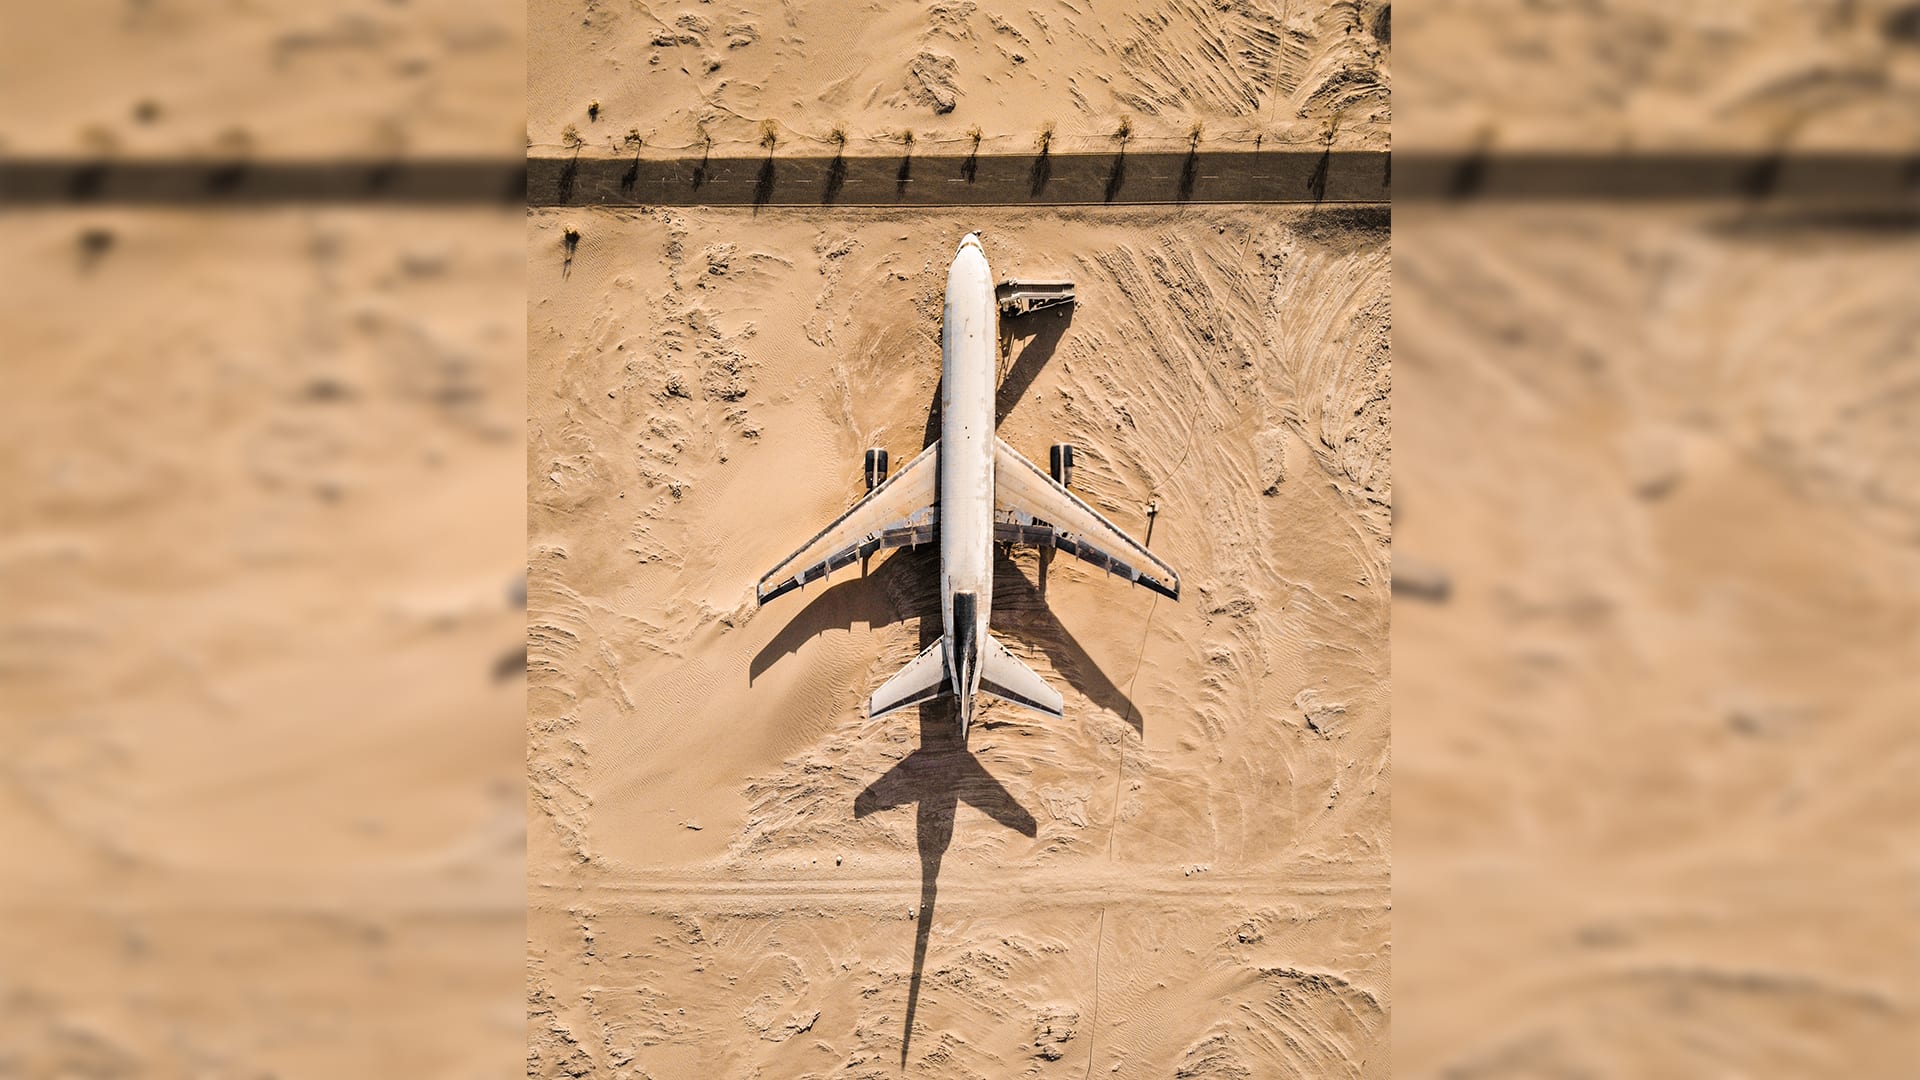 ليست محض سراب..ما حقيقة هذه الطائرة المهجورة وسط صحراء أبوظبي؟